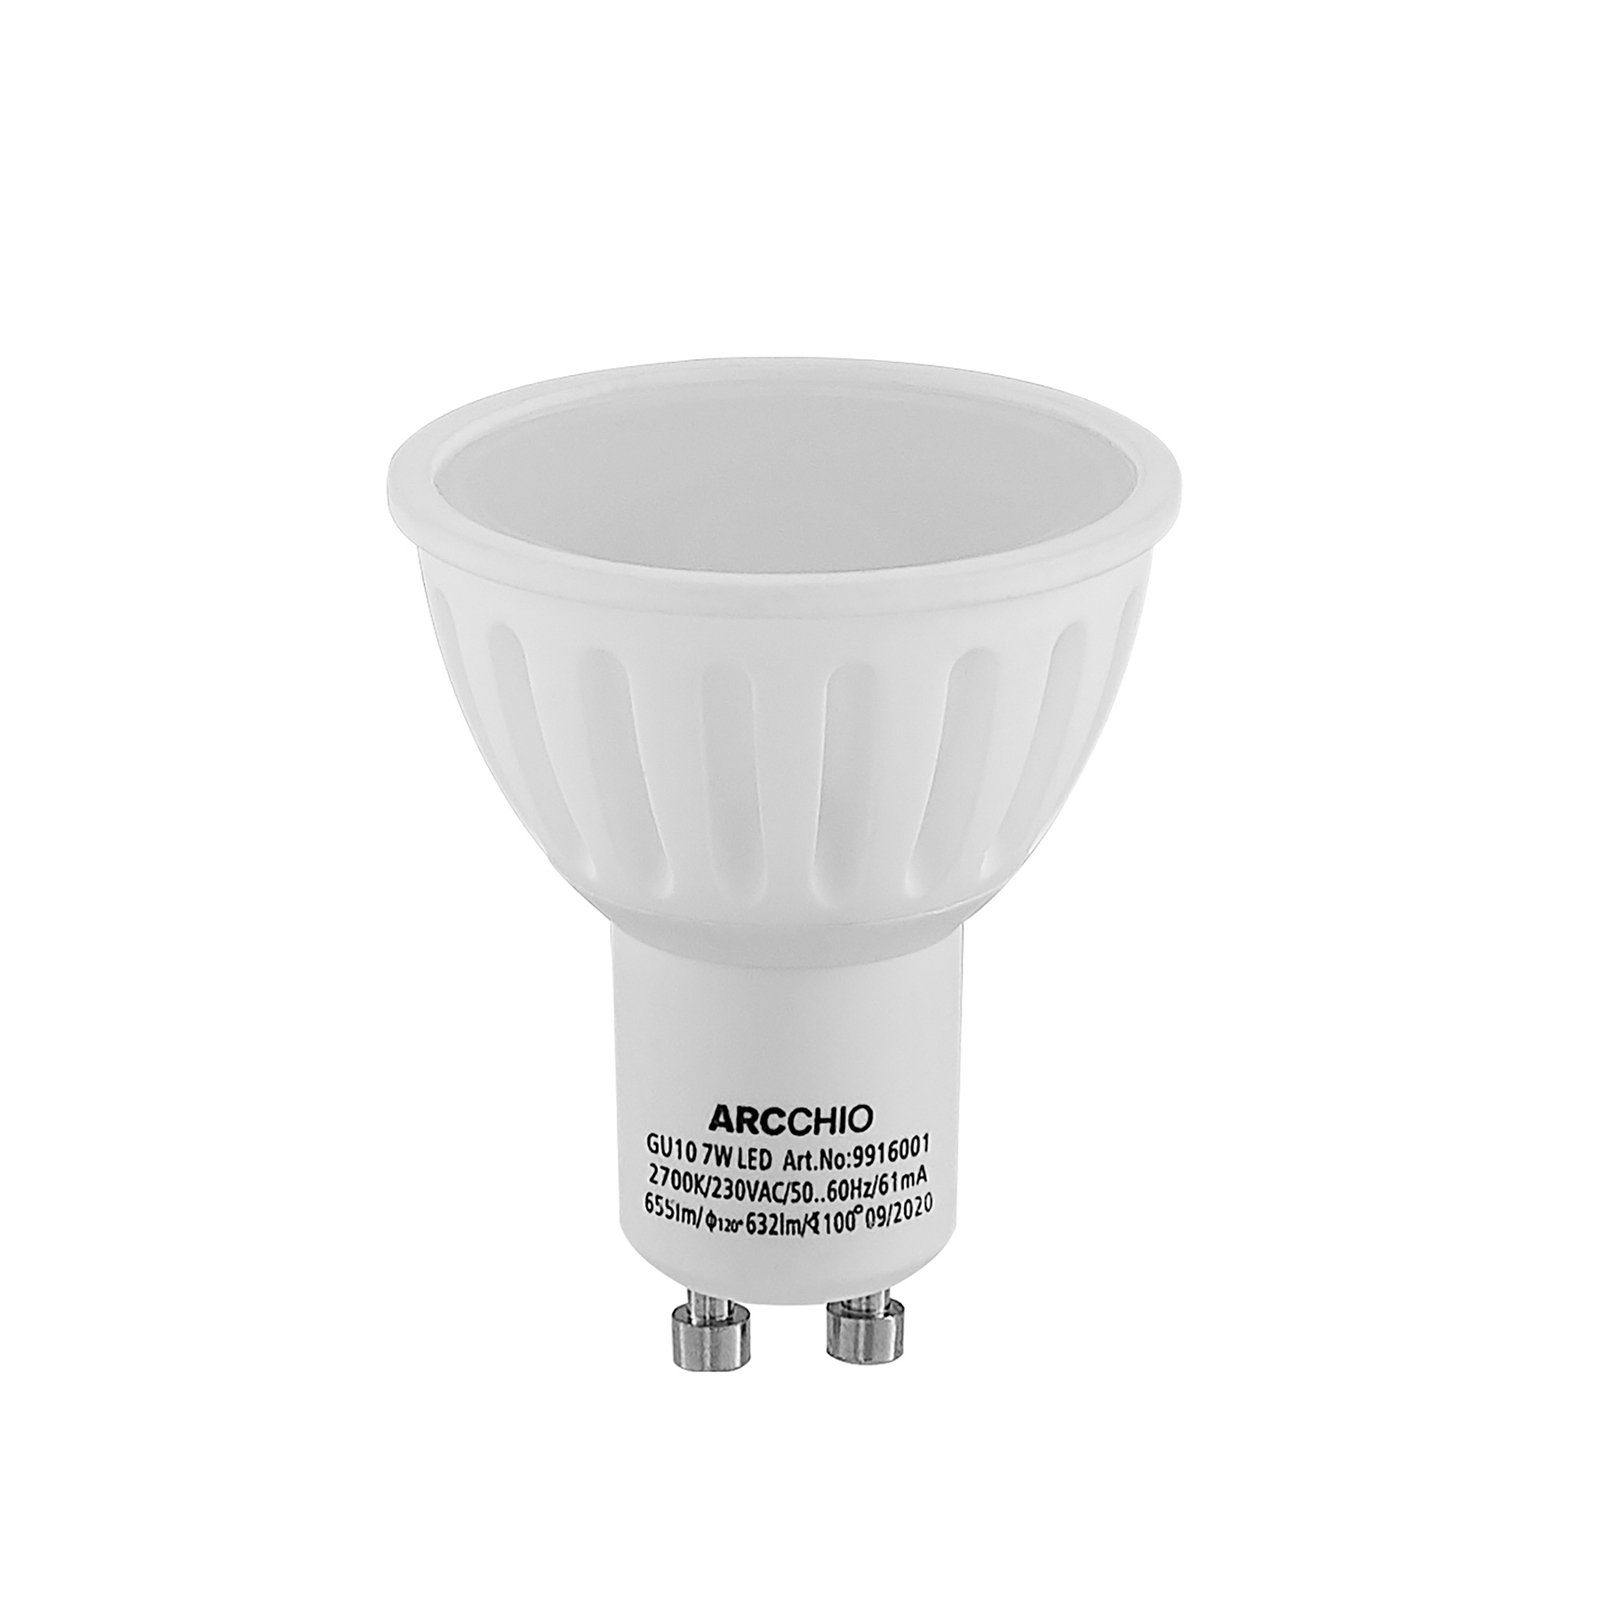 Arcchio reflector LED bulb GU10 100° 5W 3,000K 2x